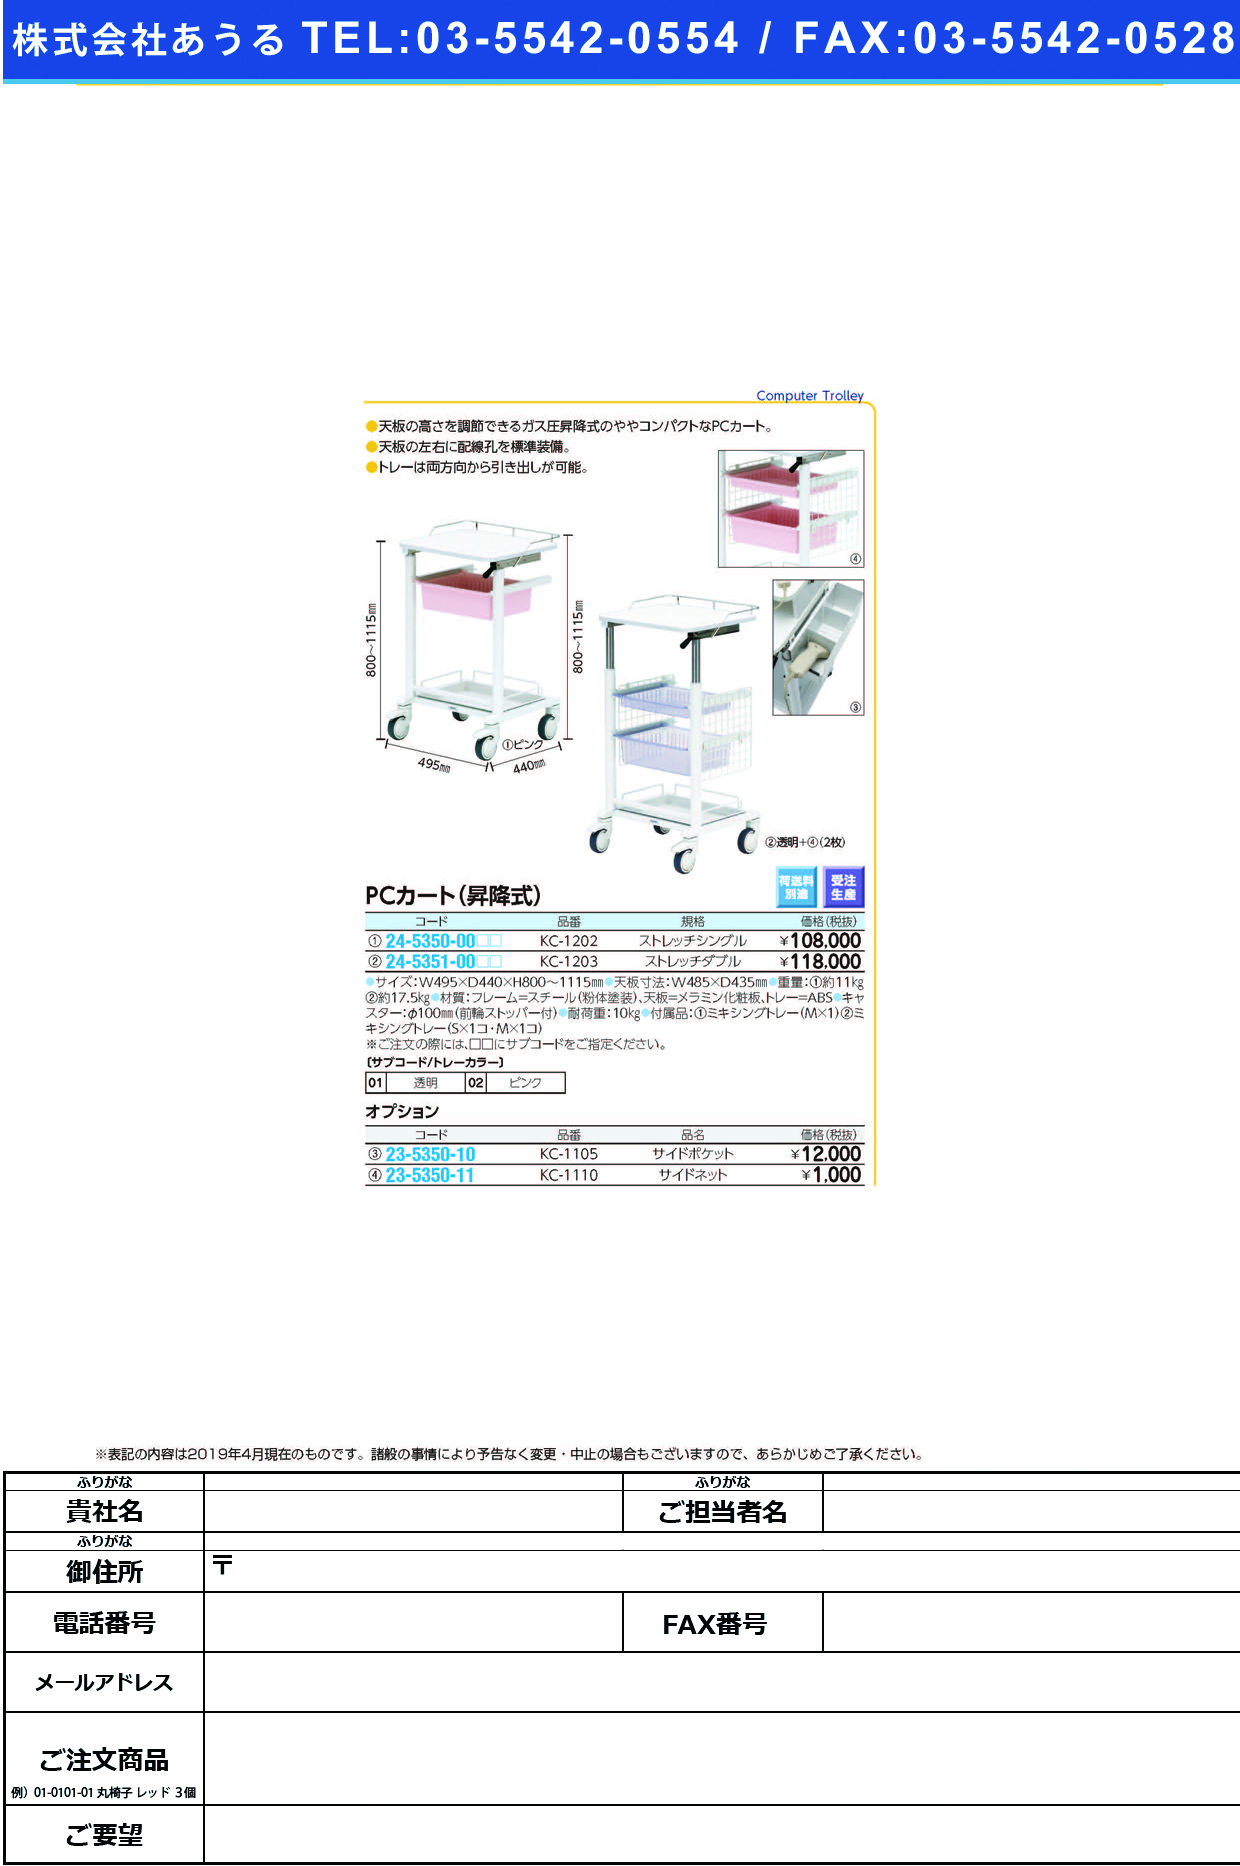 (24-5350-00)ＰＣカート（昇降式） KC-1202(ｽﾄﾚｯﾁｼﾝｸﾞﾙ) PCｶｰﾄ(ｼｮｳｺｳｼｷ) 透明(ケルン)【1台単位】【2019年カタログ商品】